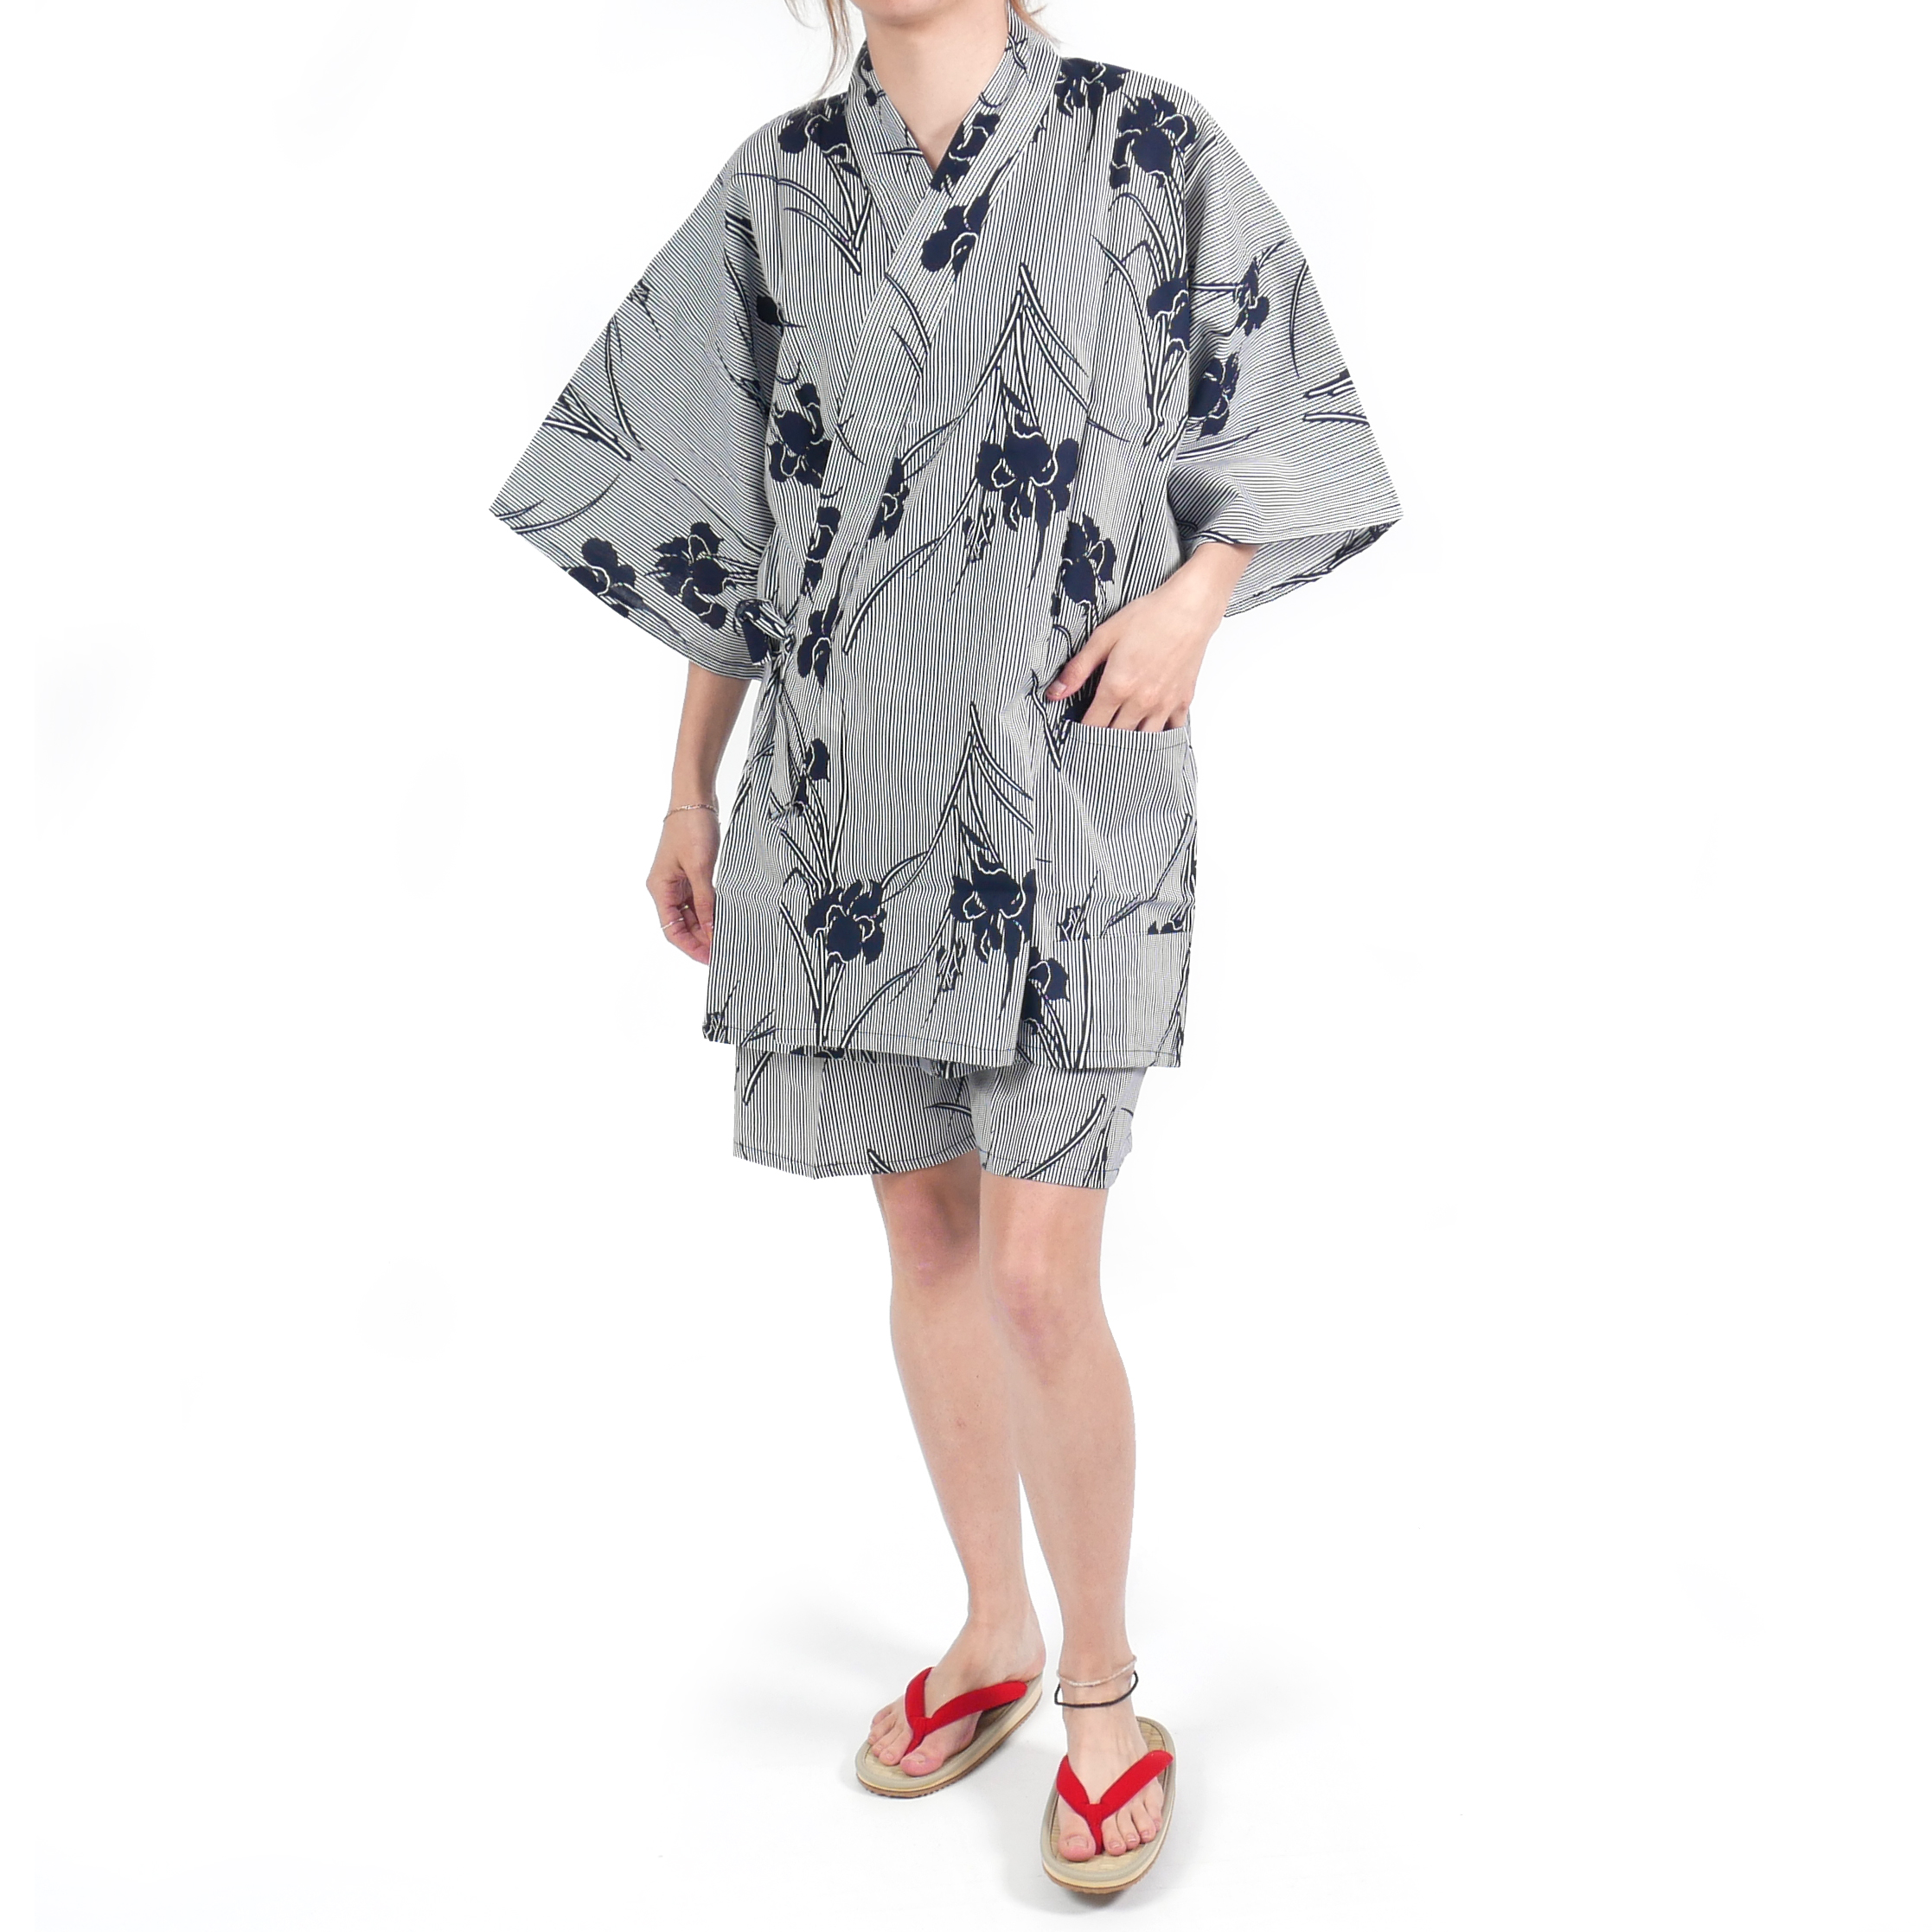 tienda A la verdad Ennegrecer Rayas de kimono de algodón azul gris japonés tradicional jinbei y flores de  iris para mujer